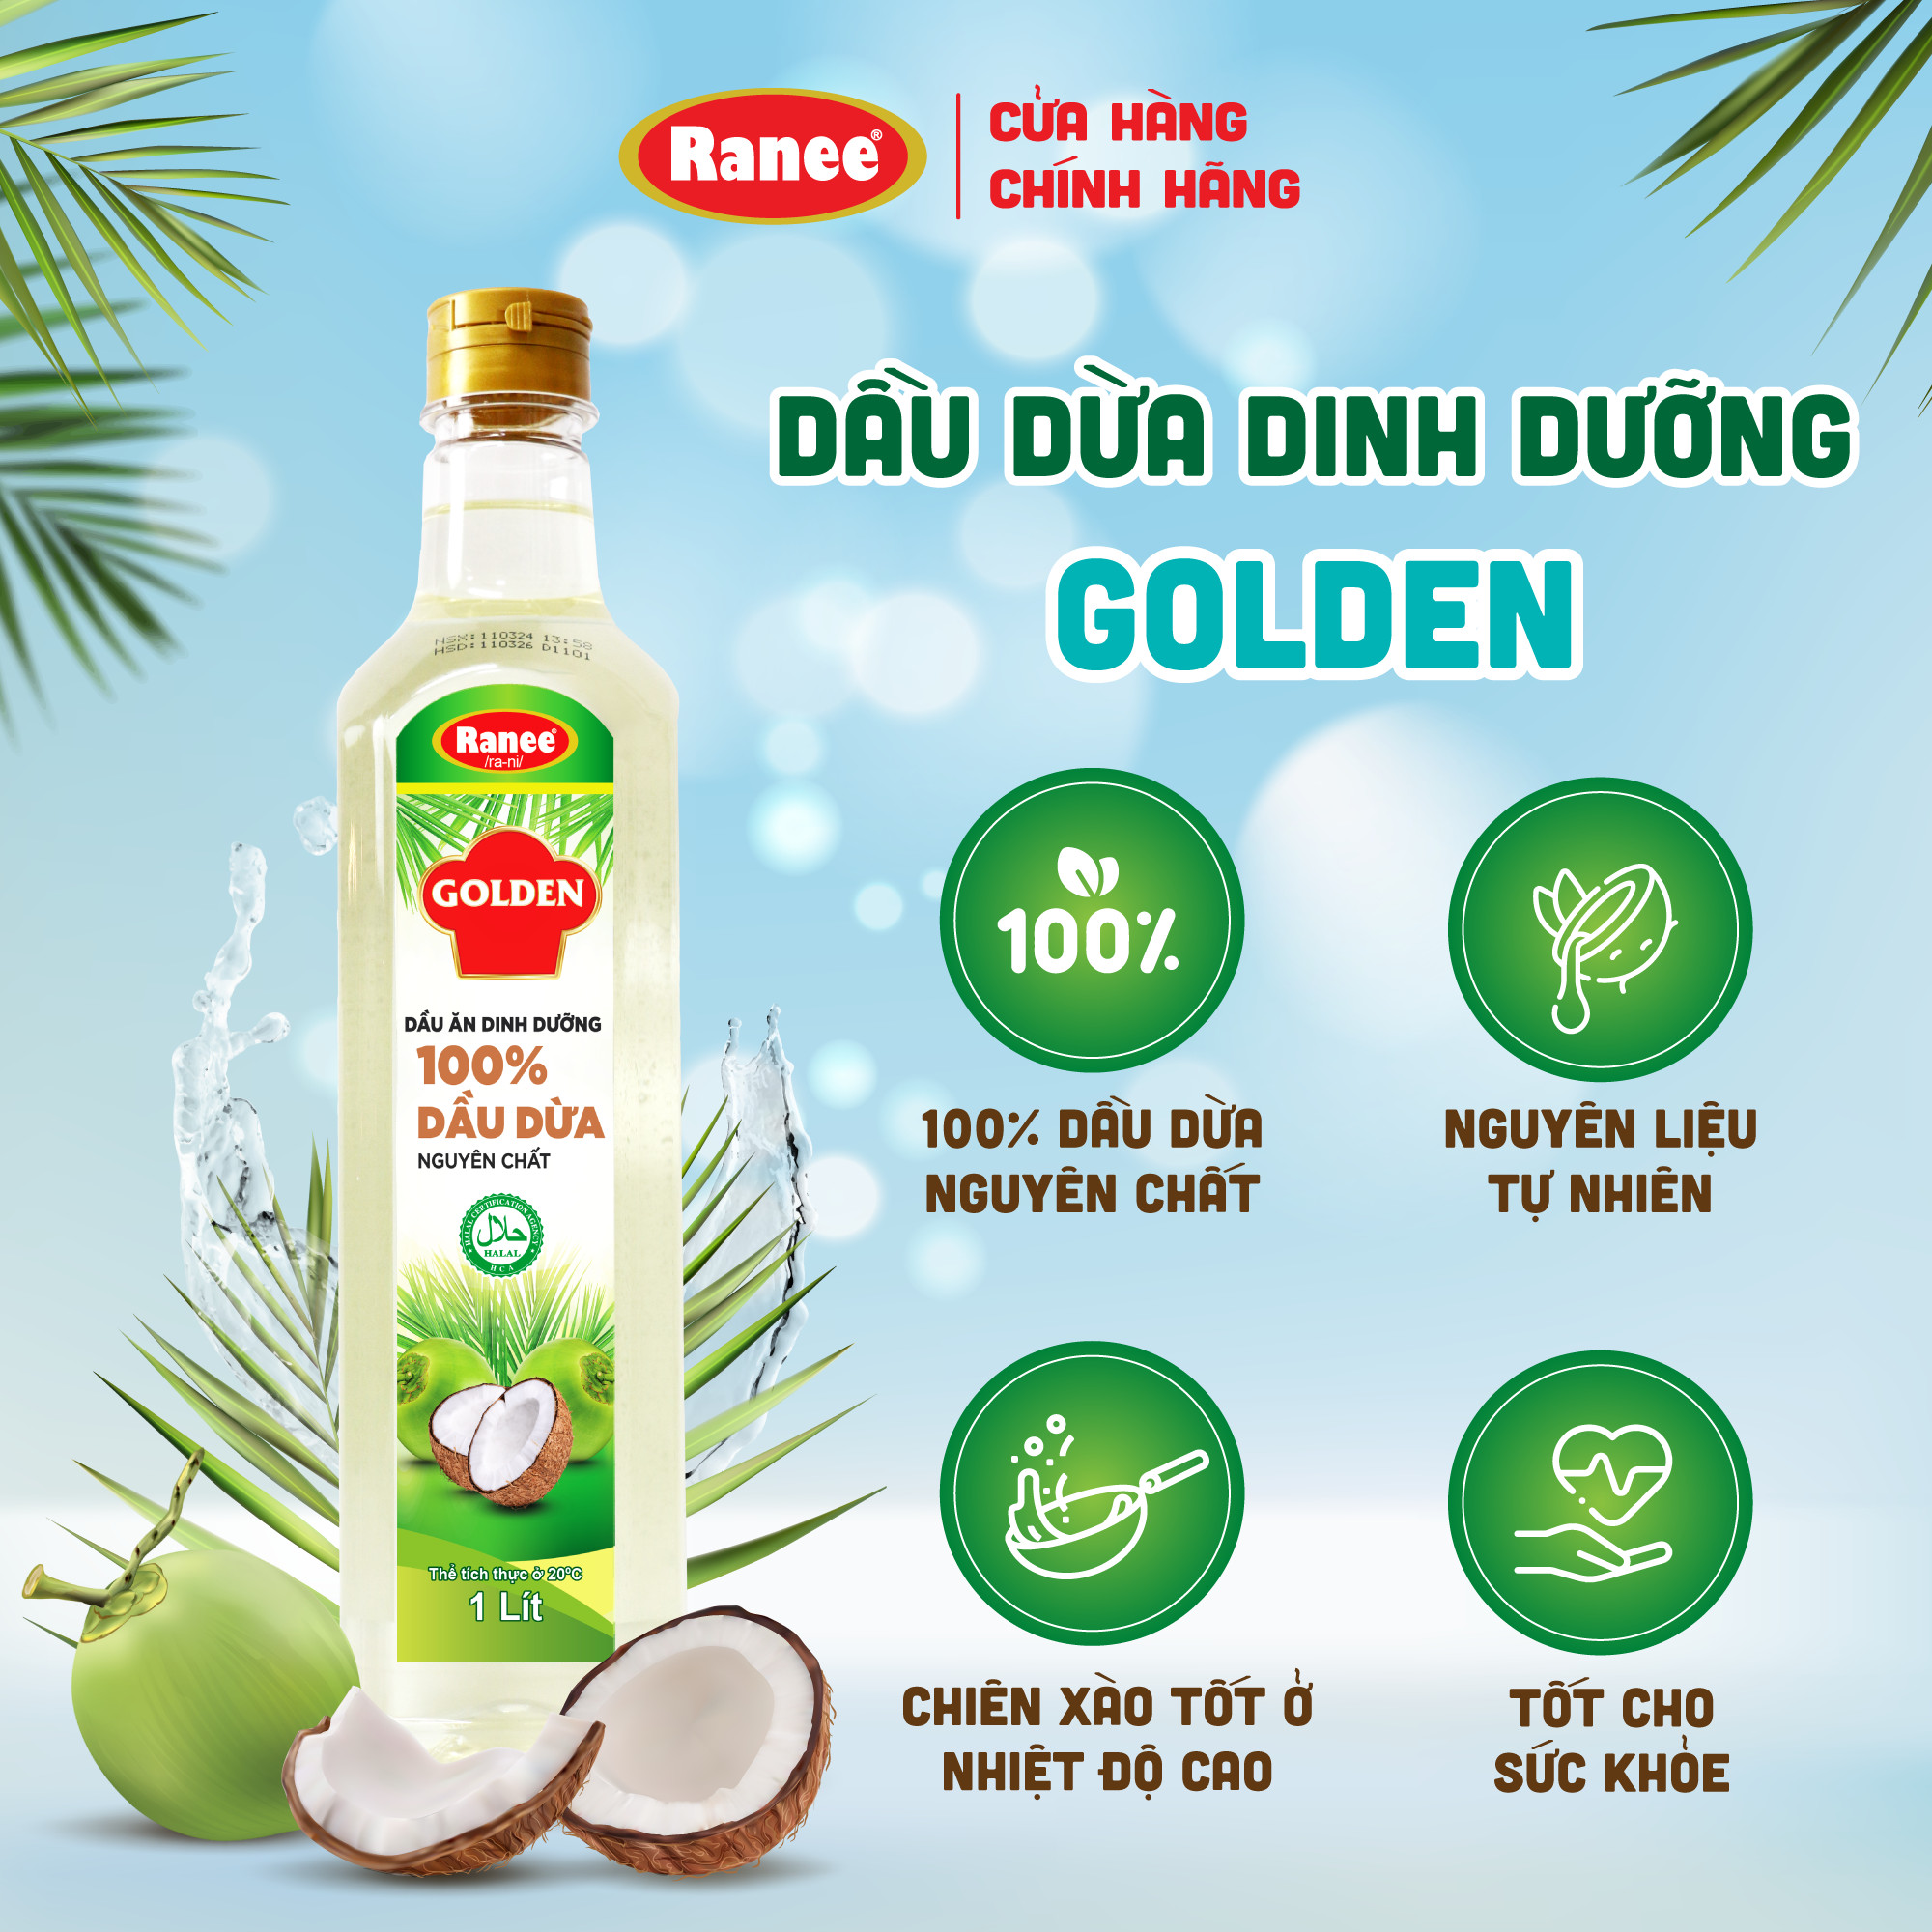 Dầu Dừa Dinh dưỡng Golden 1 lít - 100% nguyên chất